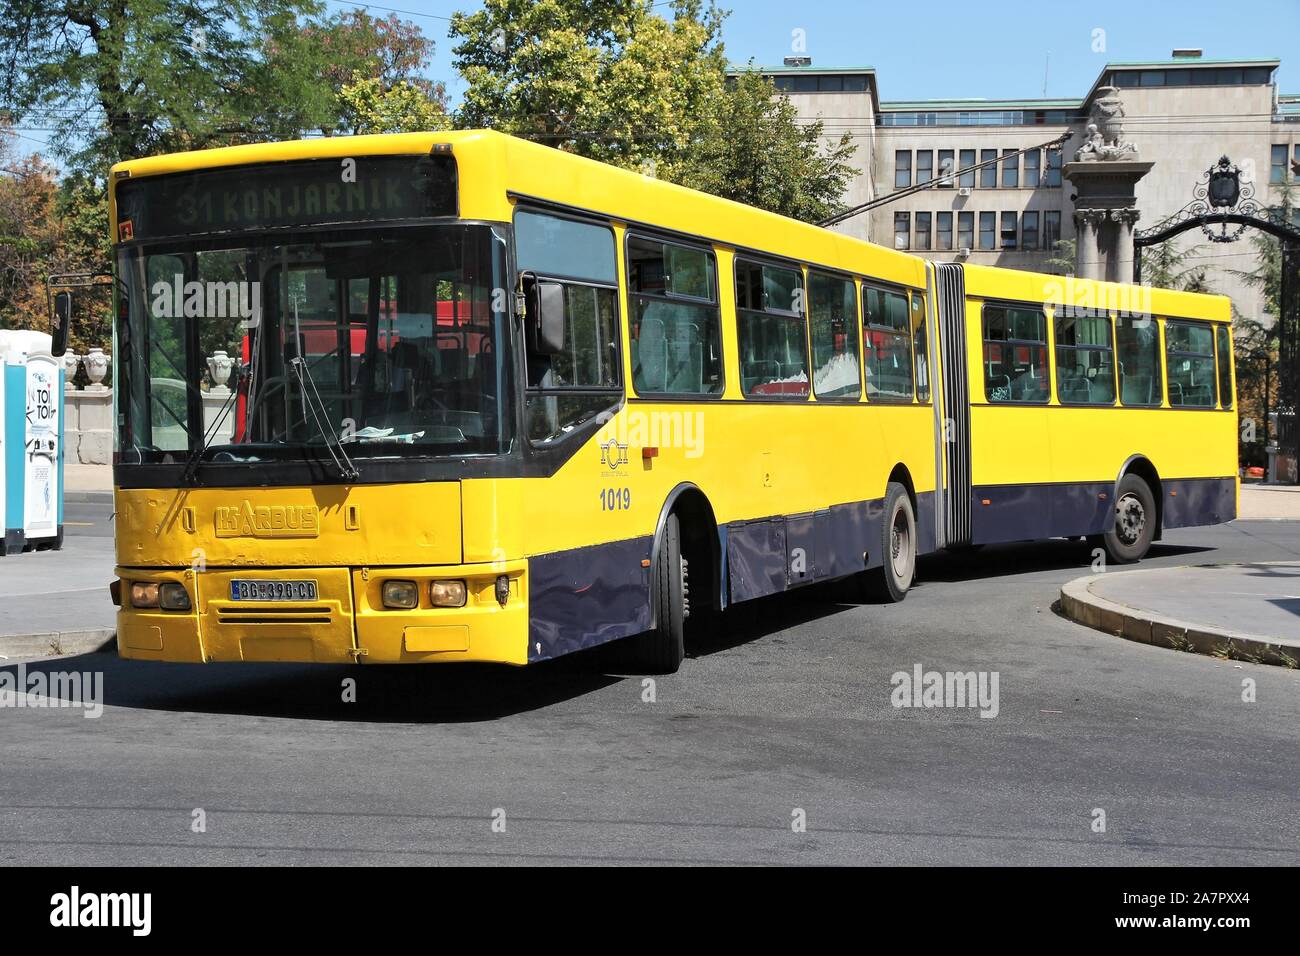 Belgrado, Serbia - Agosto 15, 2012: Ikarbus filobus elettrico a Belgrado in Serbia. Gli autobus sono i mezzi di trasporto pubblici spina dorsale di Belgrado. Il bus 1000 fle Foto Stock